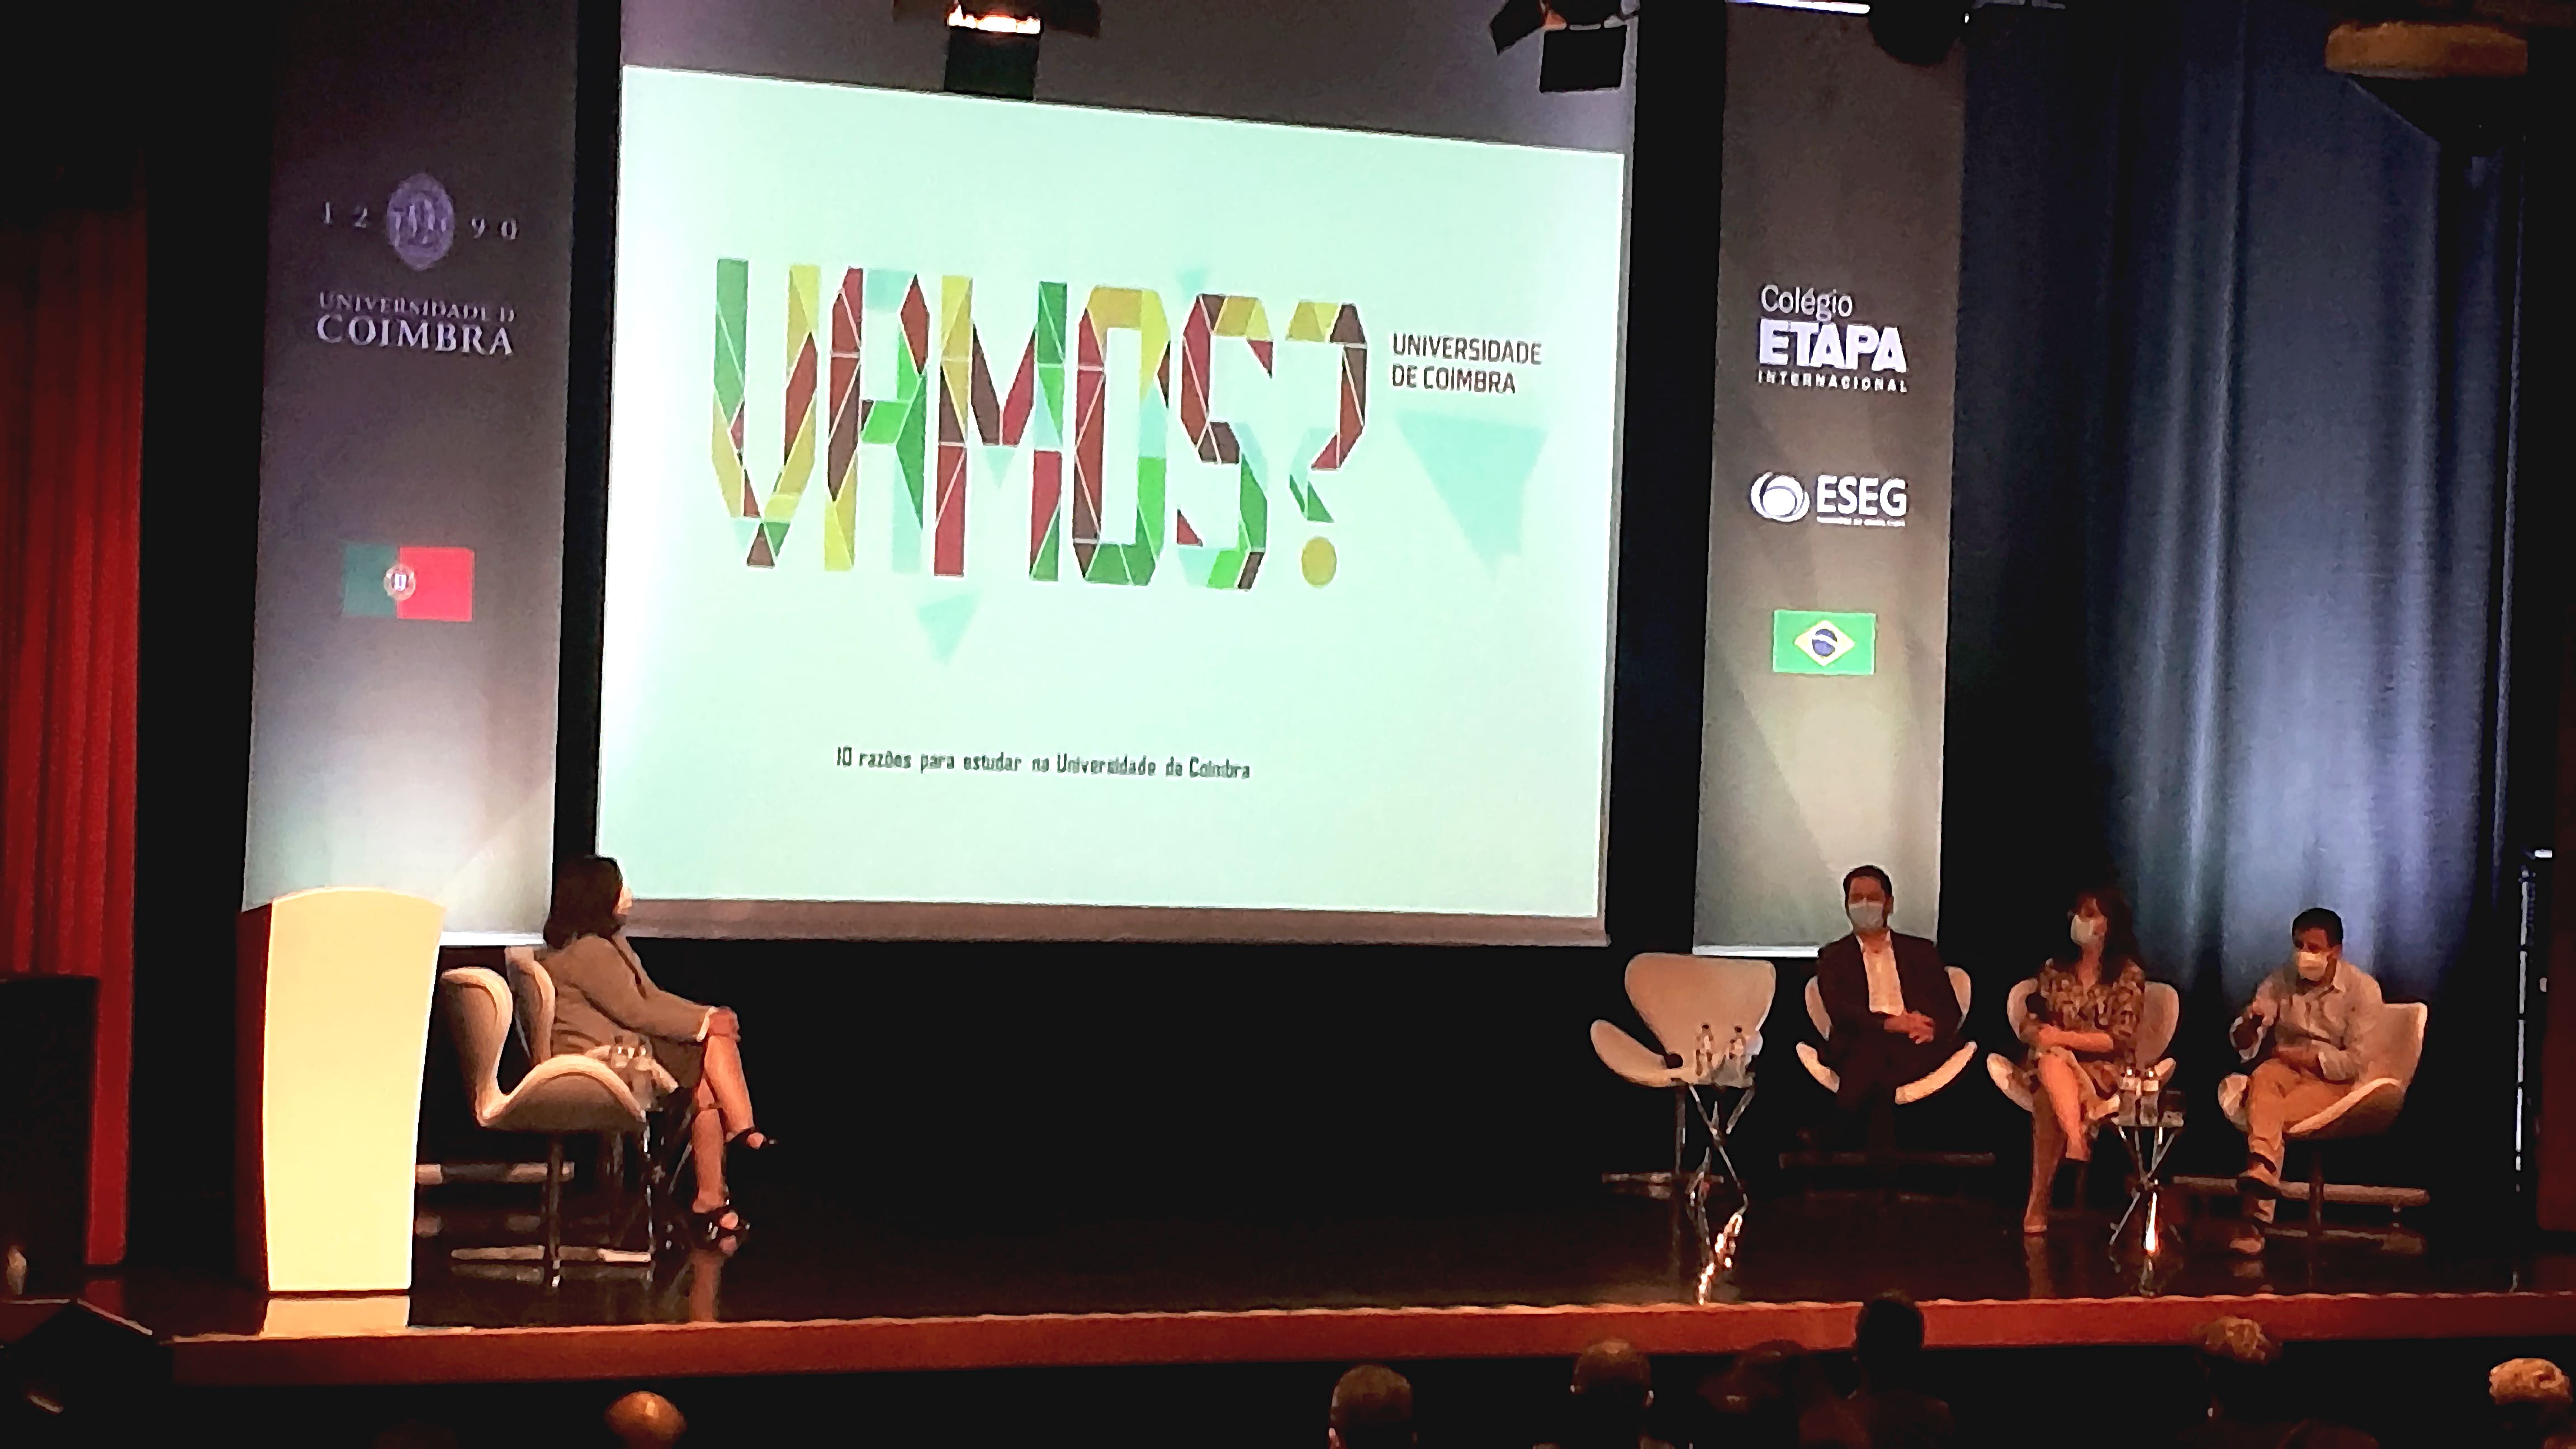 Etapa realiza evento com docentes da Universidade de Coimbra